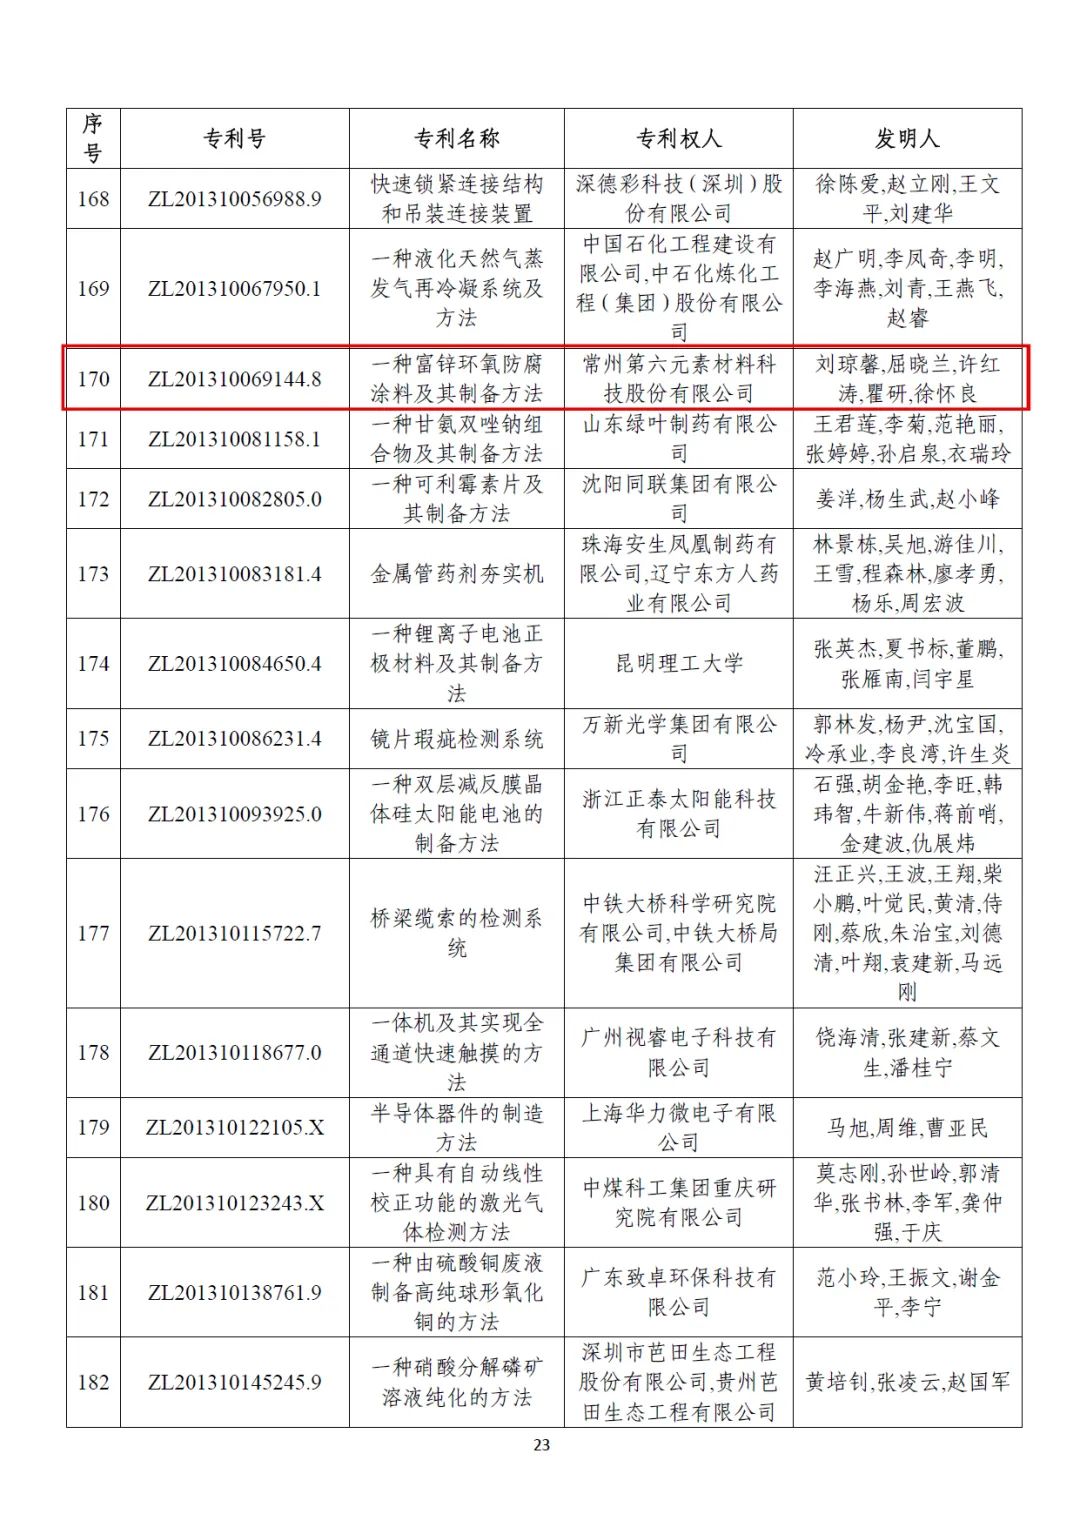 第六元素专利《ZL201310069144.8 一种富锌环氧防腐涂料及其制备方法》获得第二十二届中国专利优秀奖